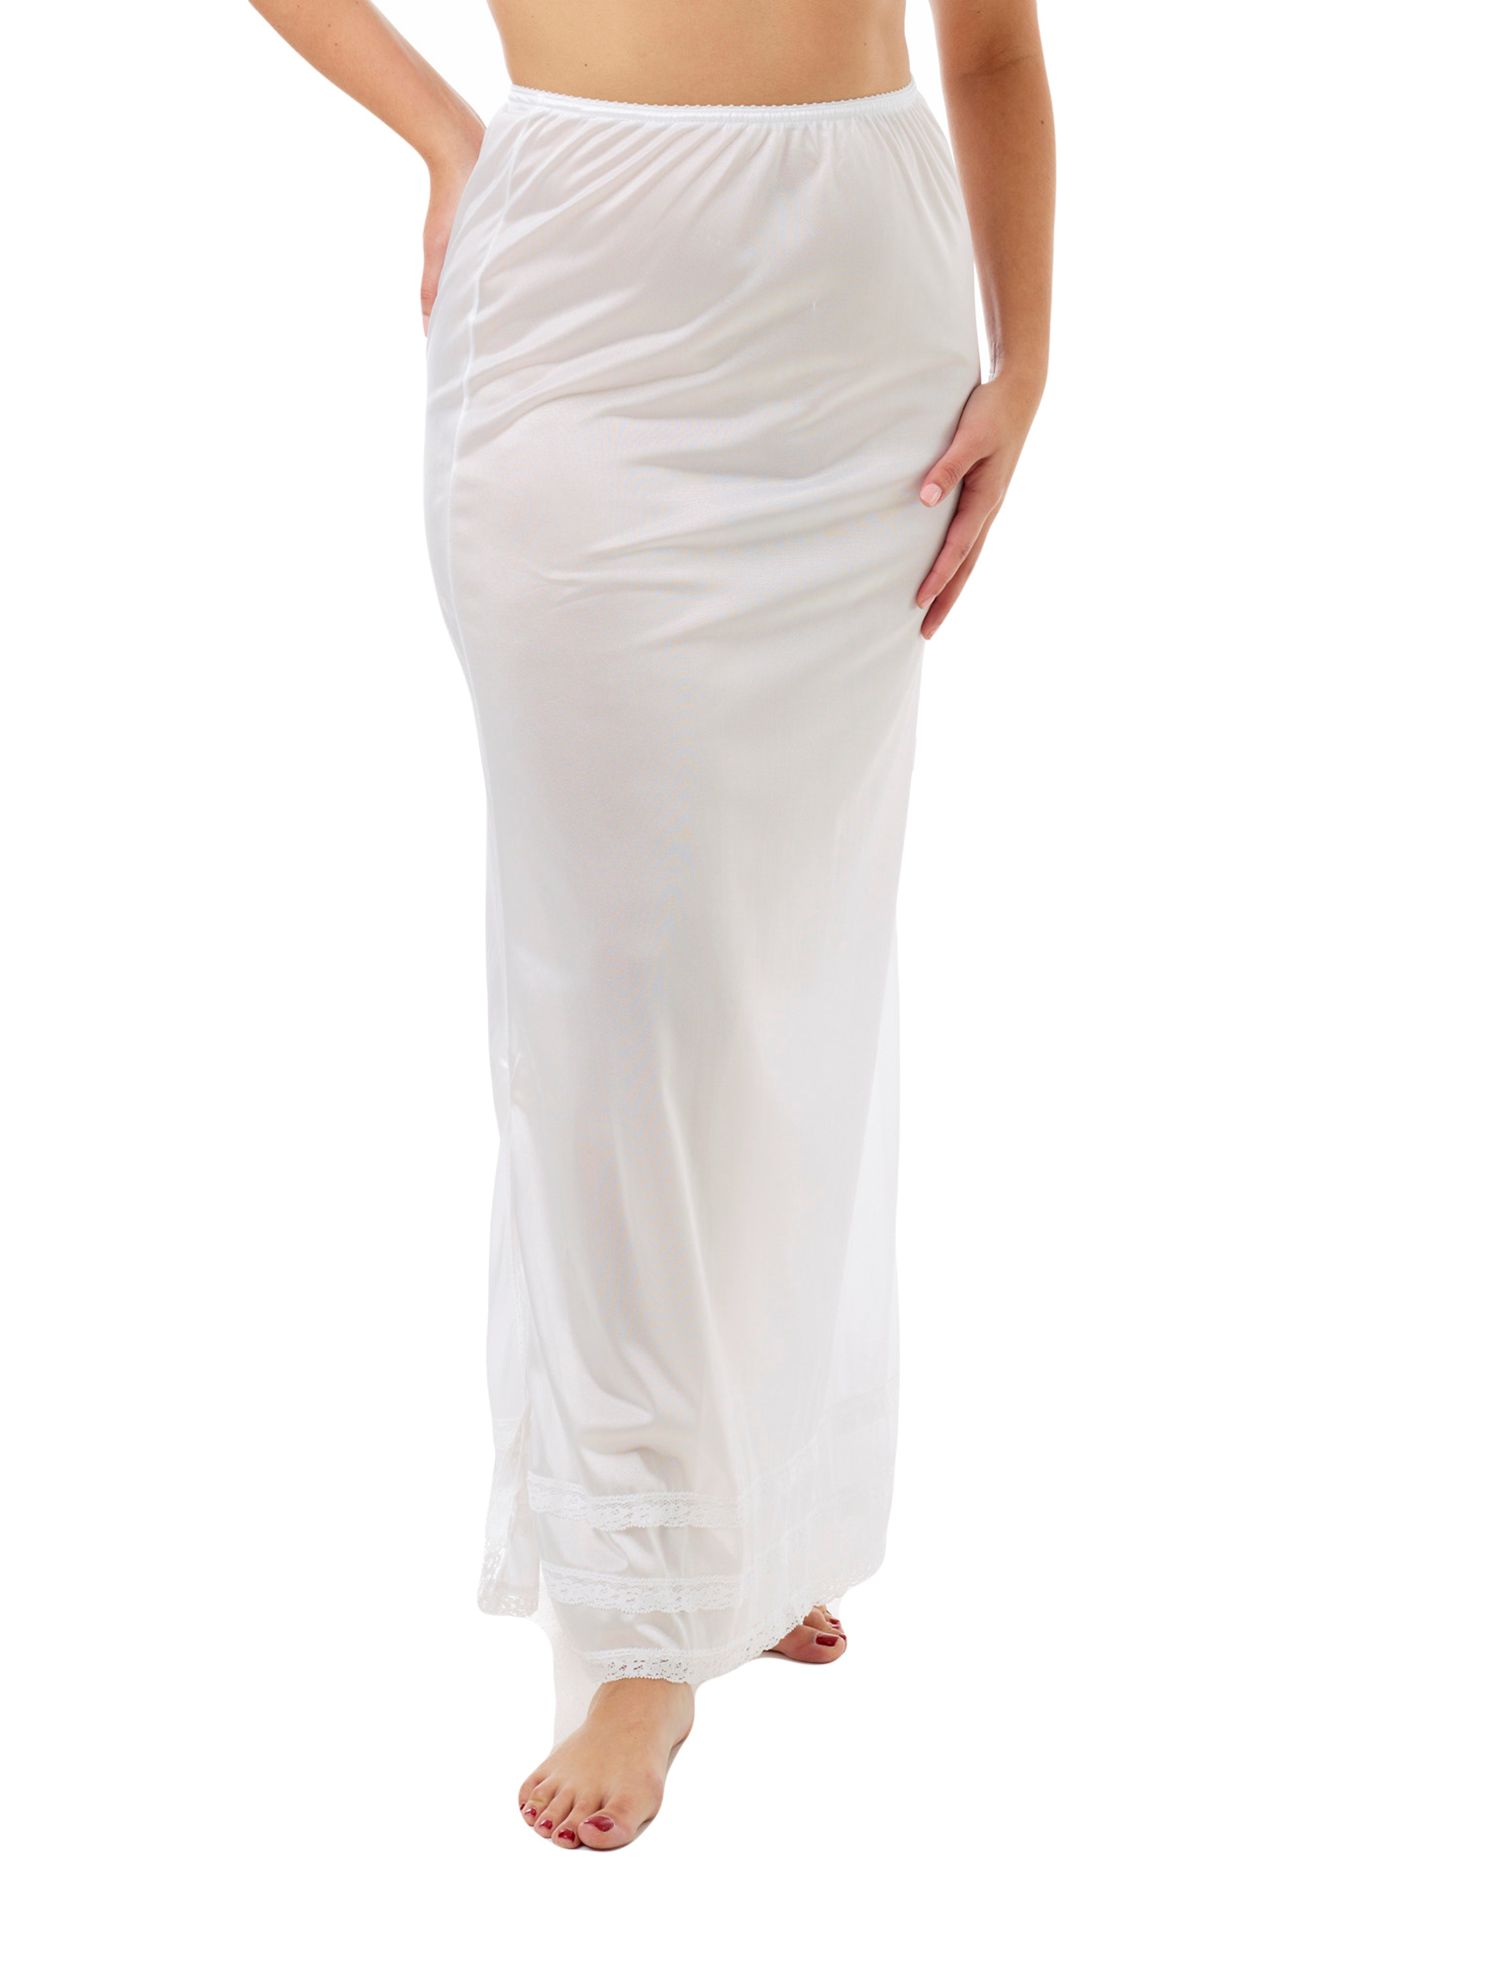 Underworks Women Nylon Maxi Length Half Slip - White - S